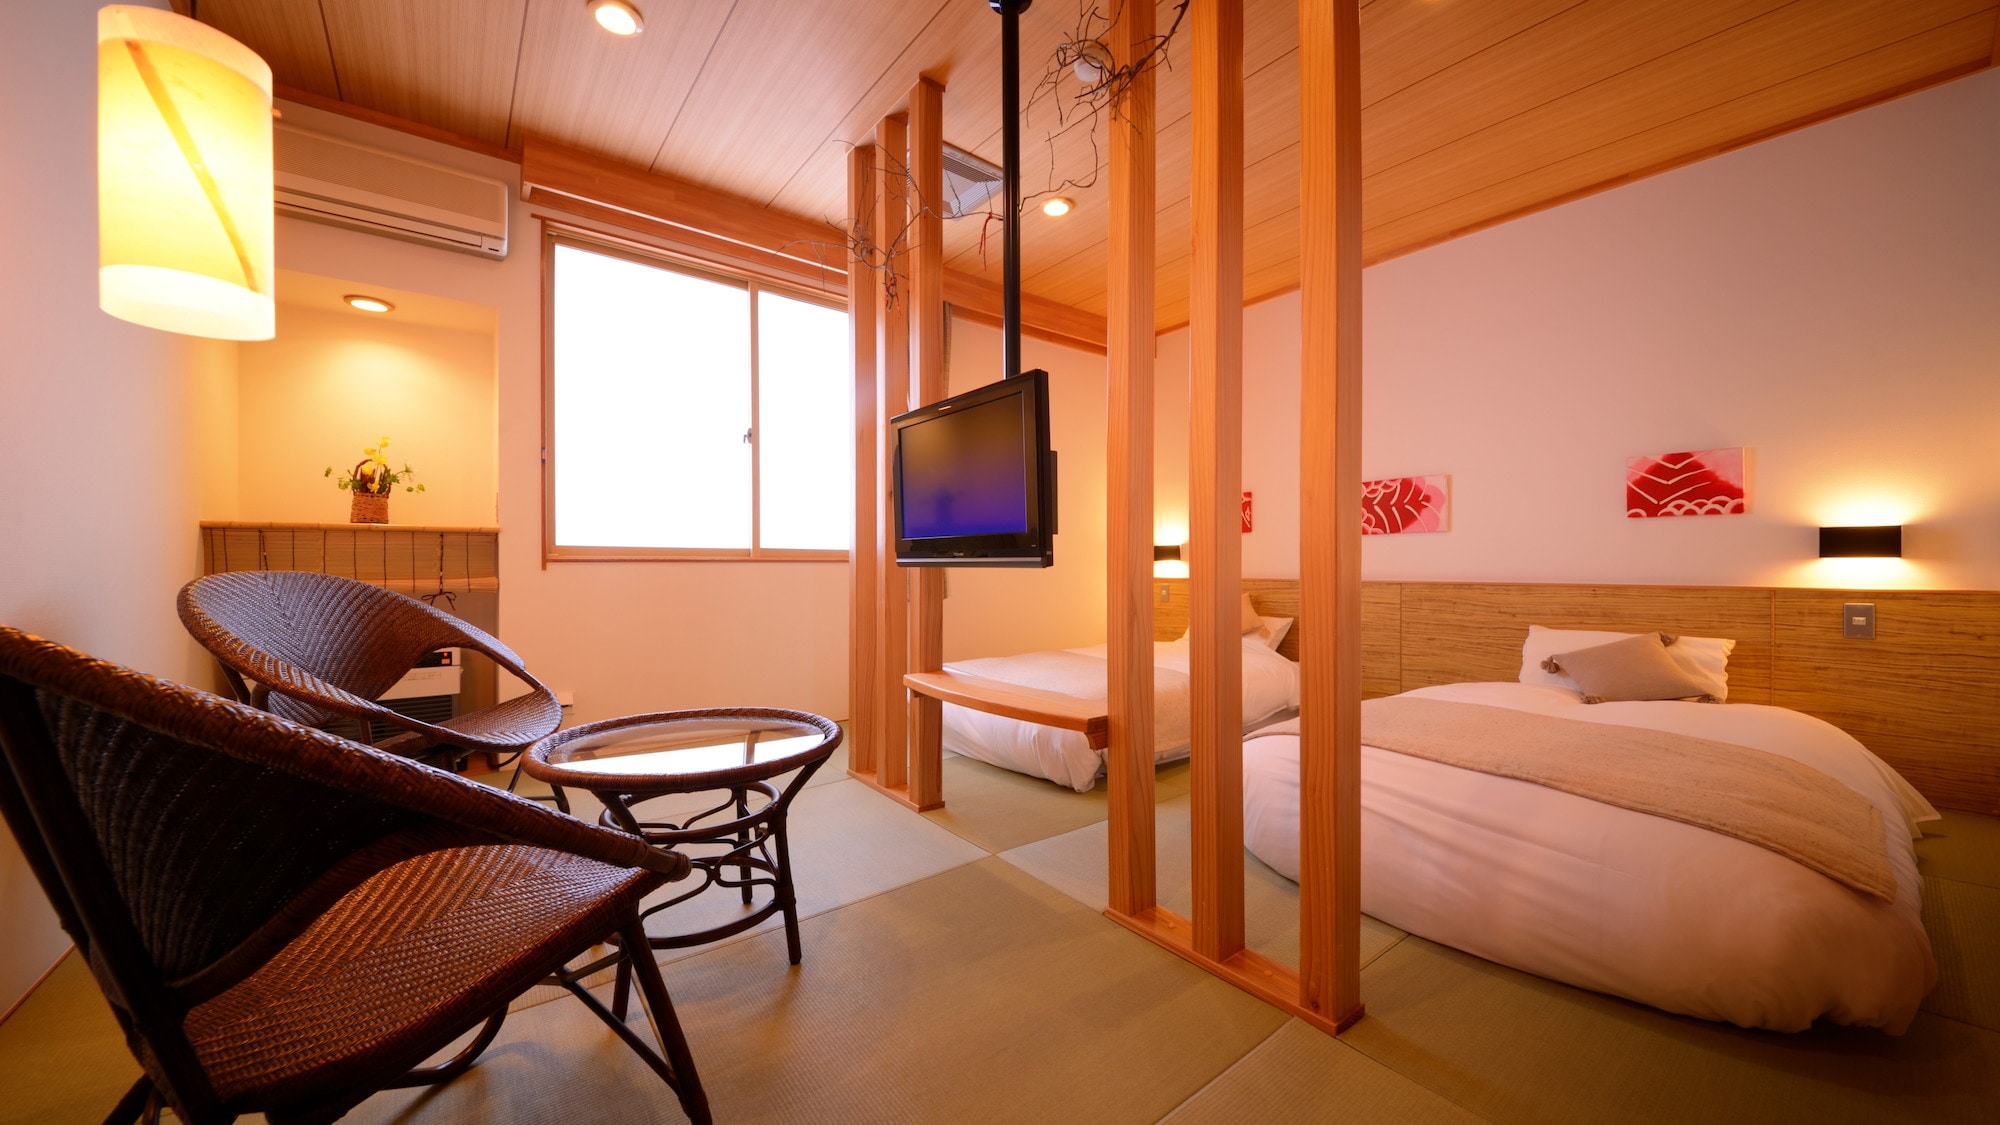 Non-smoking room "Hoshi no Shizuku" * Low-bed type twin room